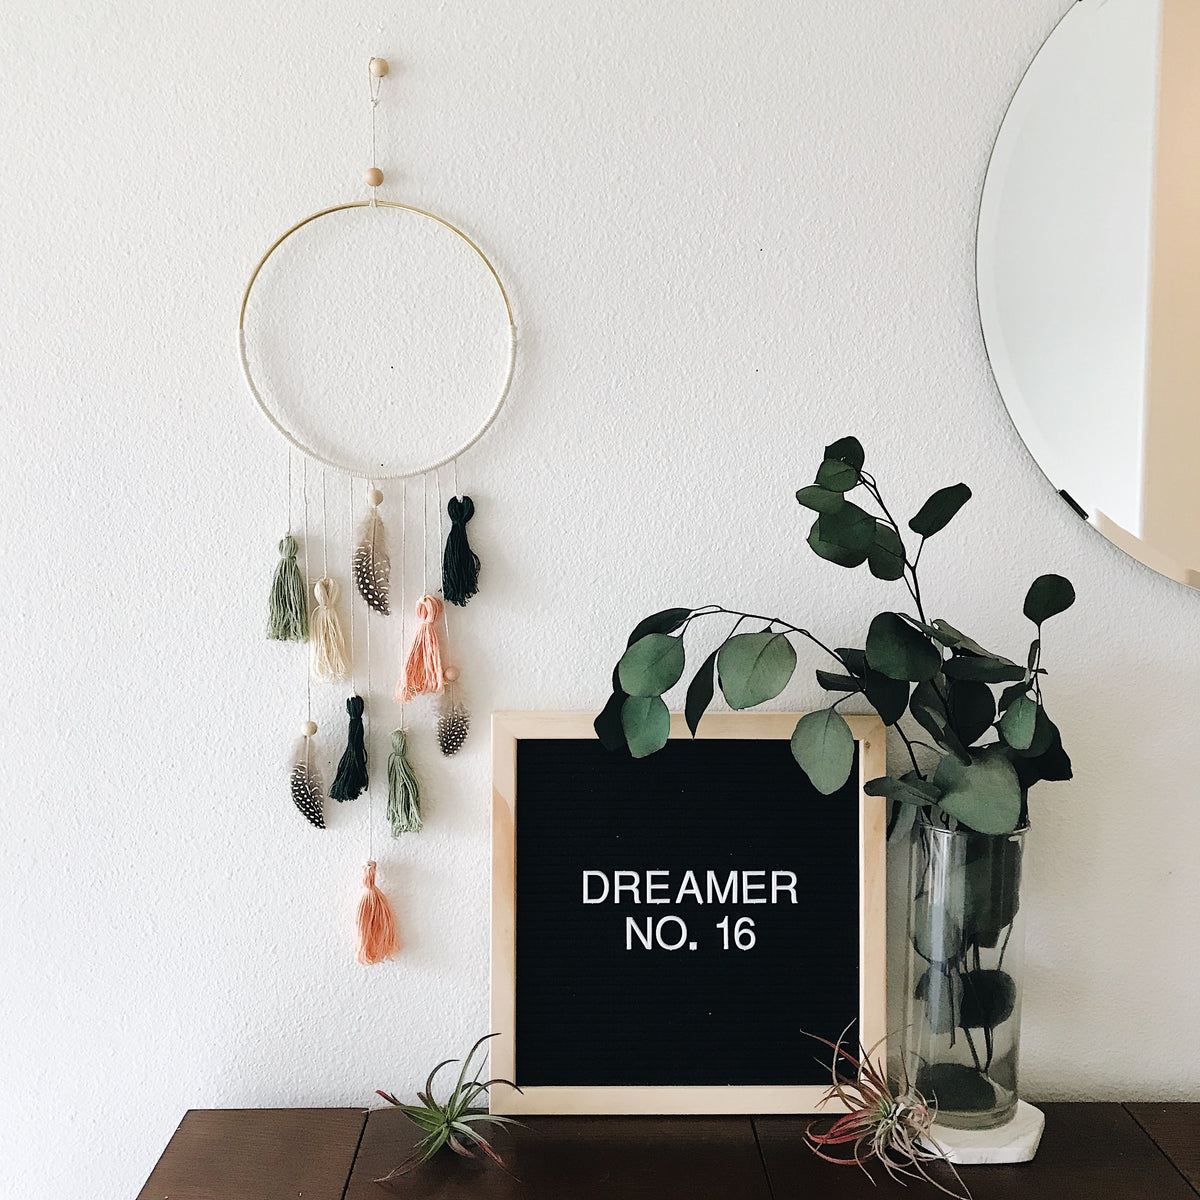 Dreamer No. 16 | 100 Days of Dreamers